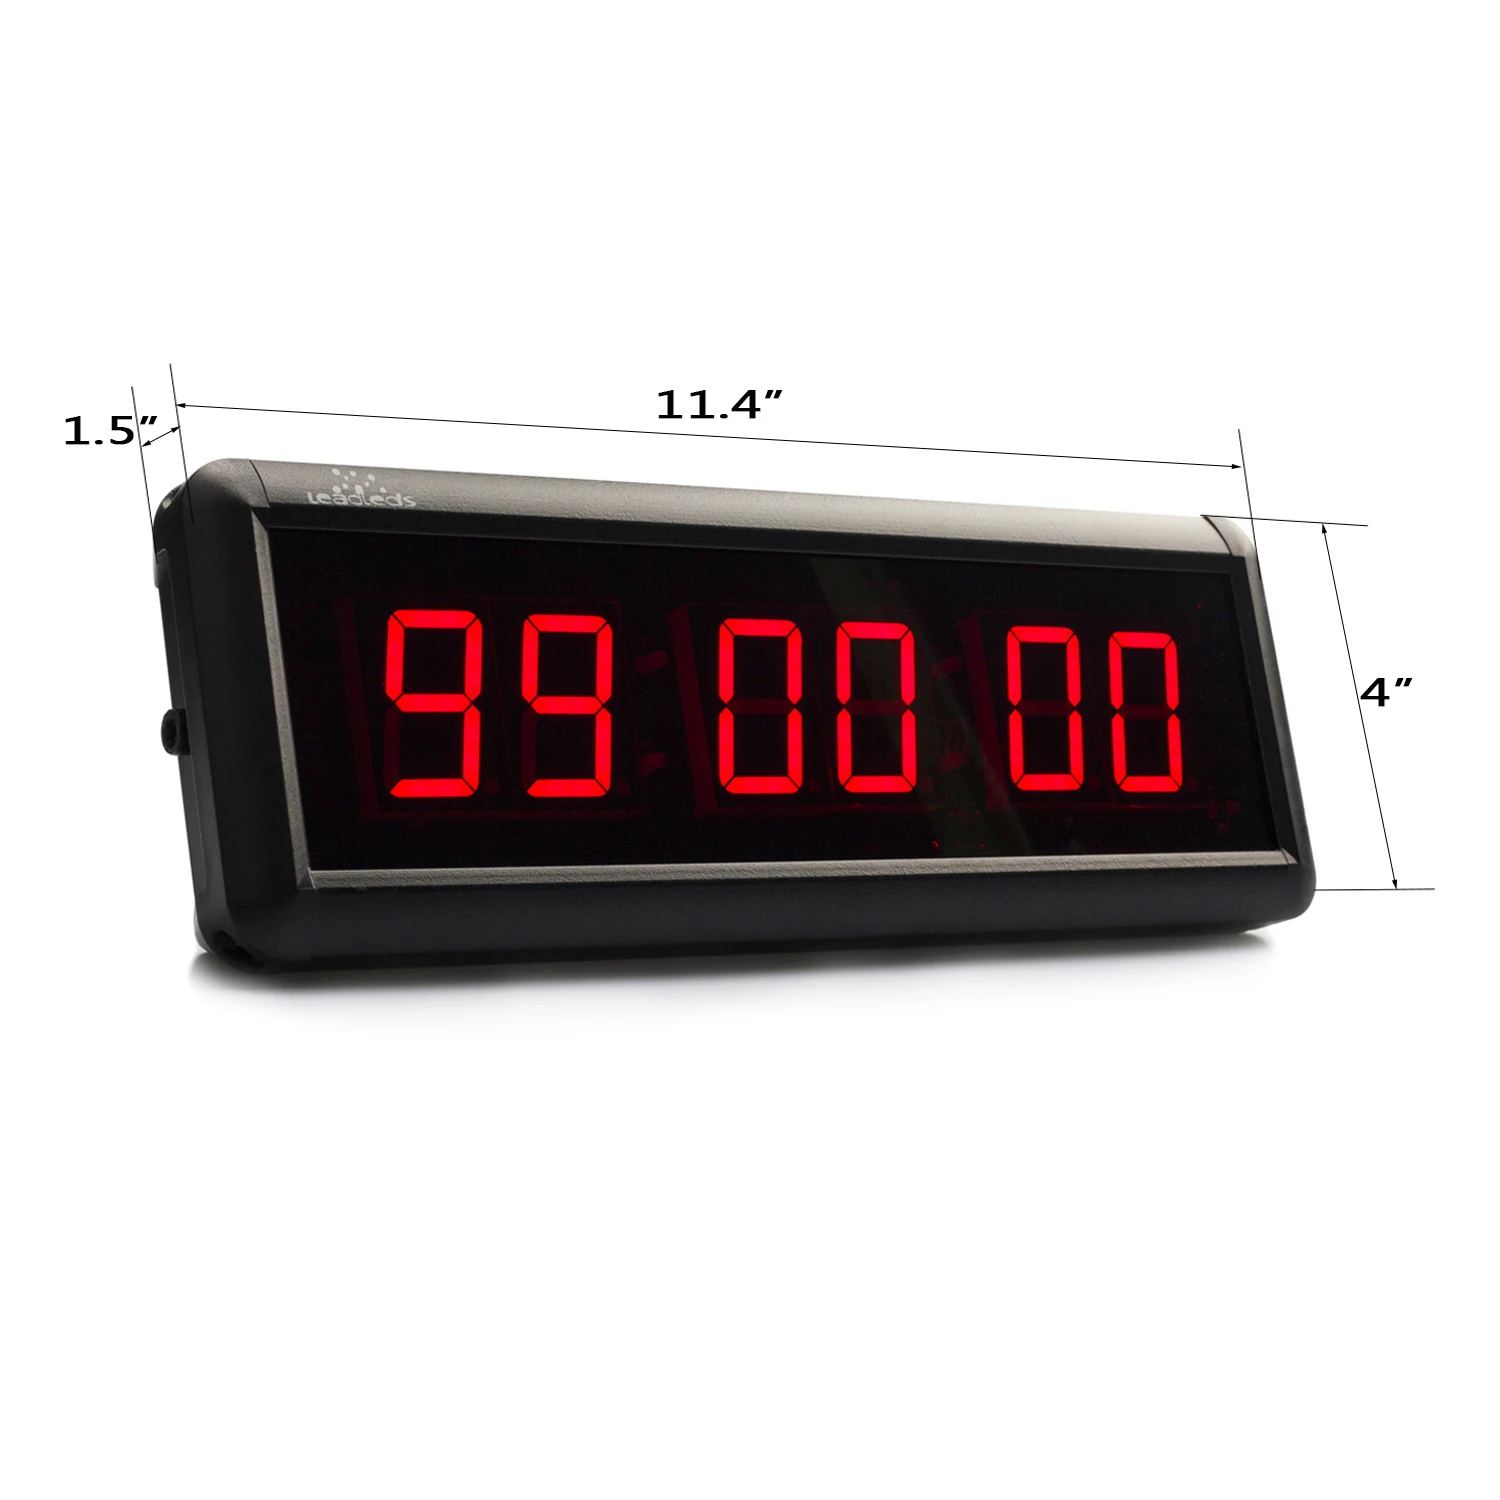 Таймер с сигналом. 70-0530 Rexant цифровые часы с таймером обратного отсчета RX-100а. Таймер обратного отсчета tm1638. Таймер обратного отсчета PS-110. Цифровой светодиодный секундомер.